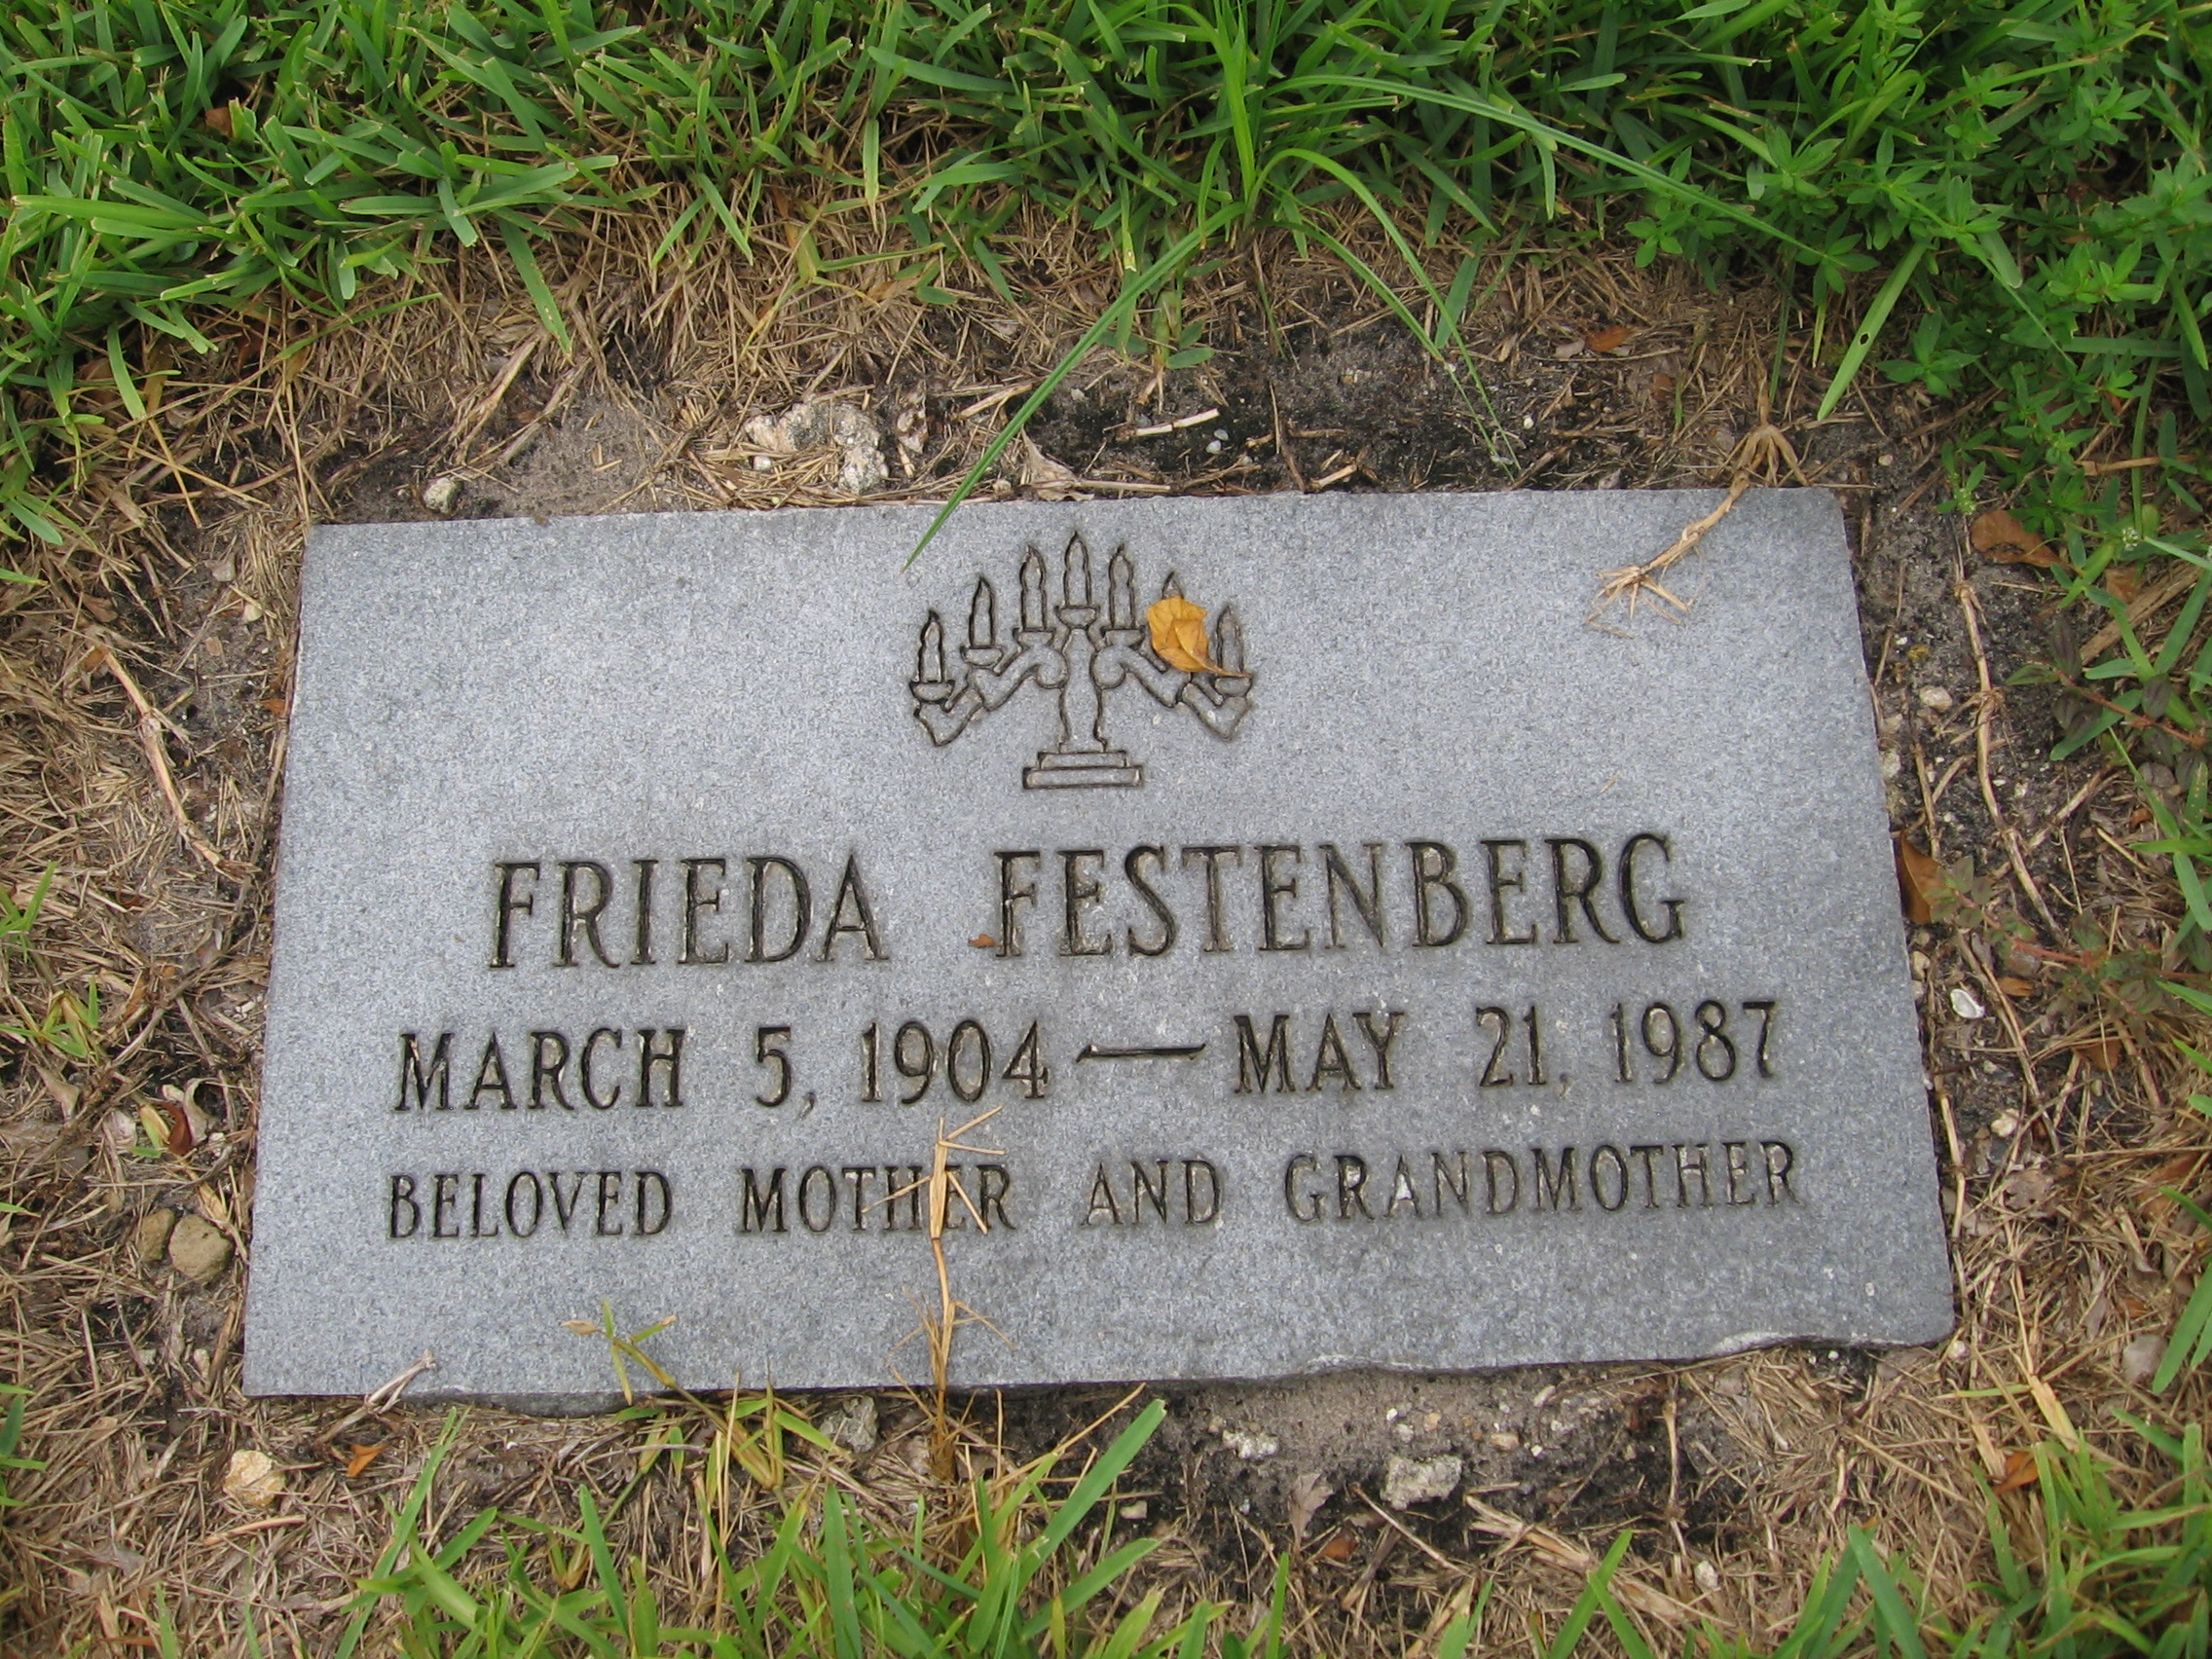 Frieda Festenberg